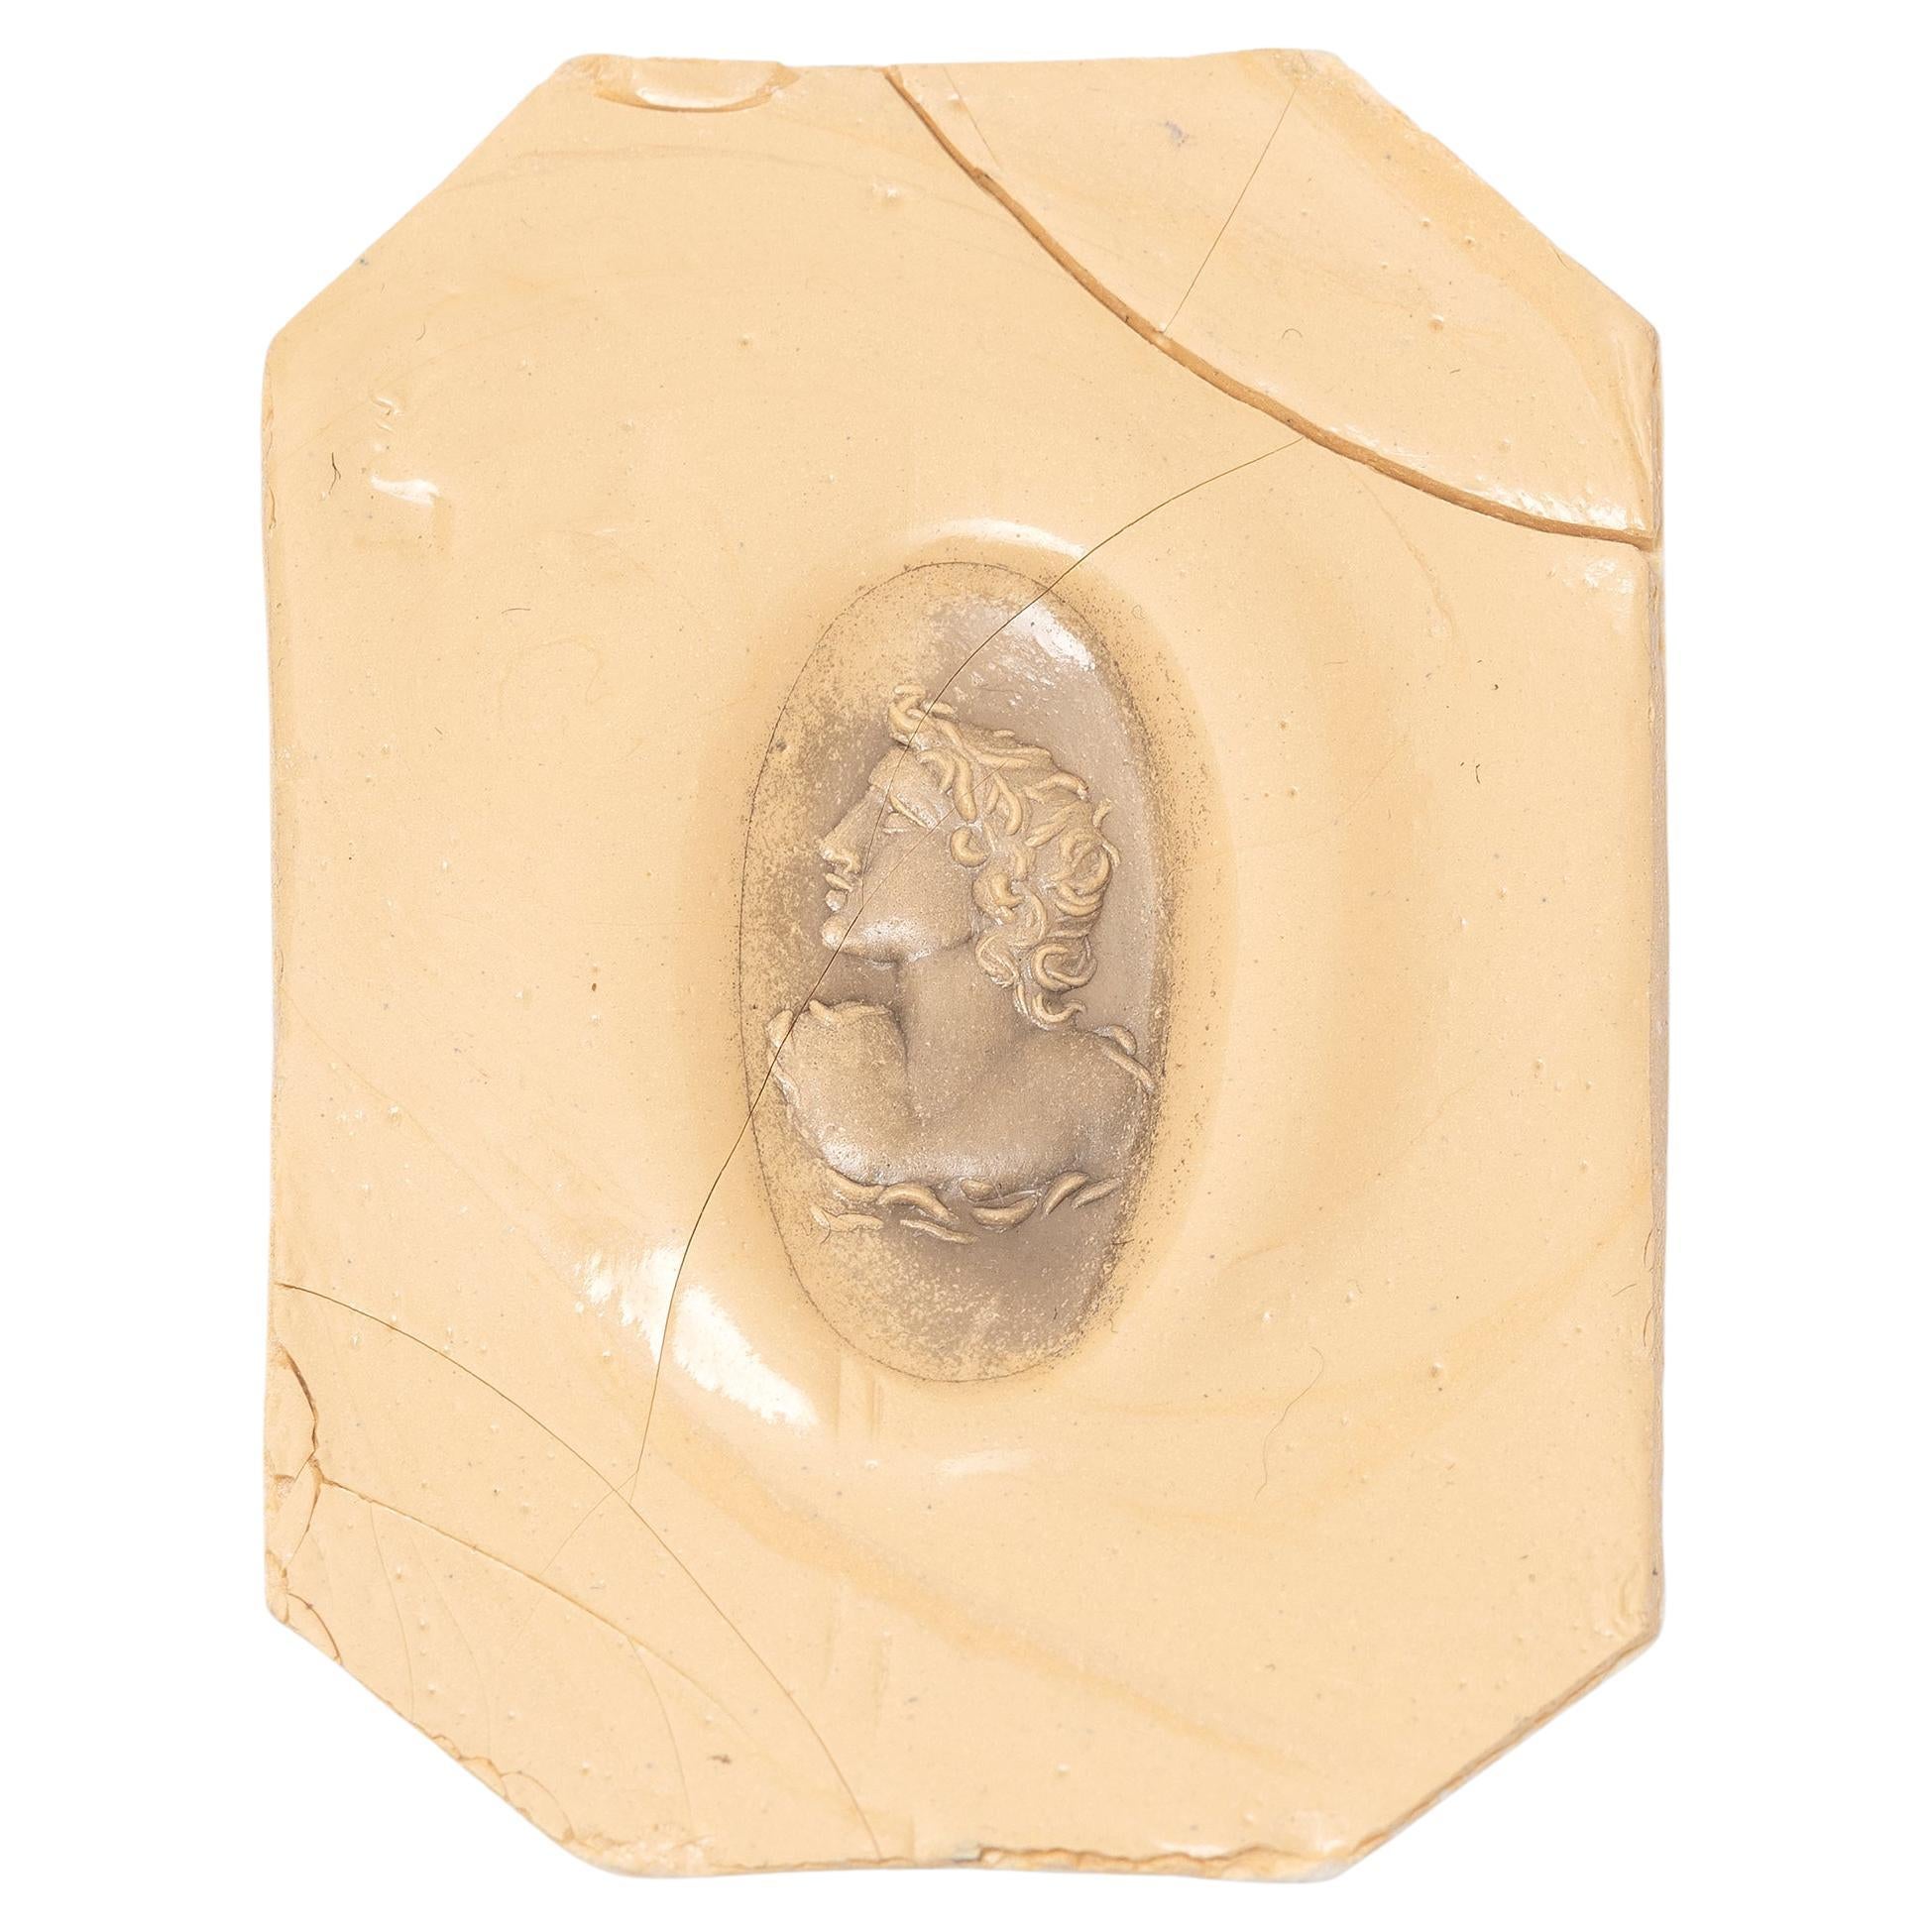 Ancienne intaille romaine du premier siècle ADS en jaspe rouge représentant Apollo en or jaune 18 carats.
Taille 8
Long 2,3cm
Weight:14,92gr.